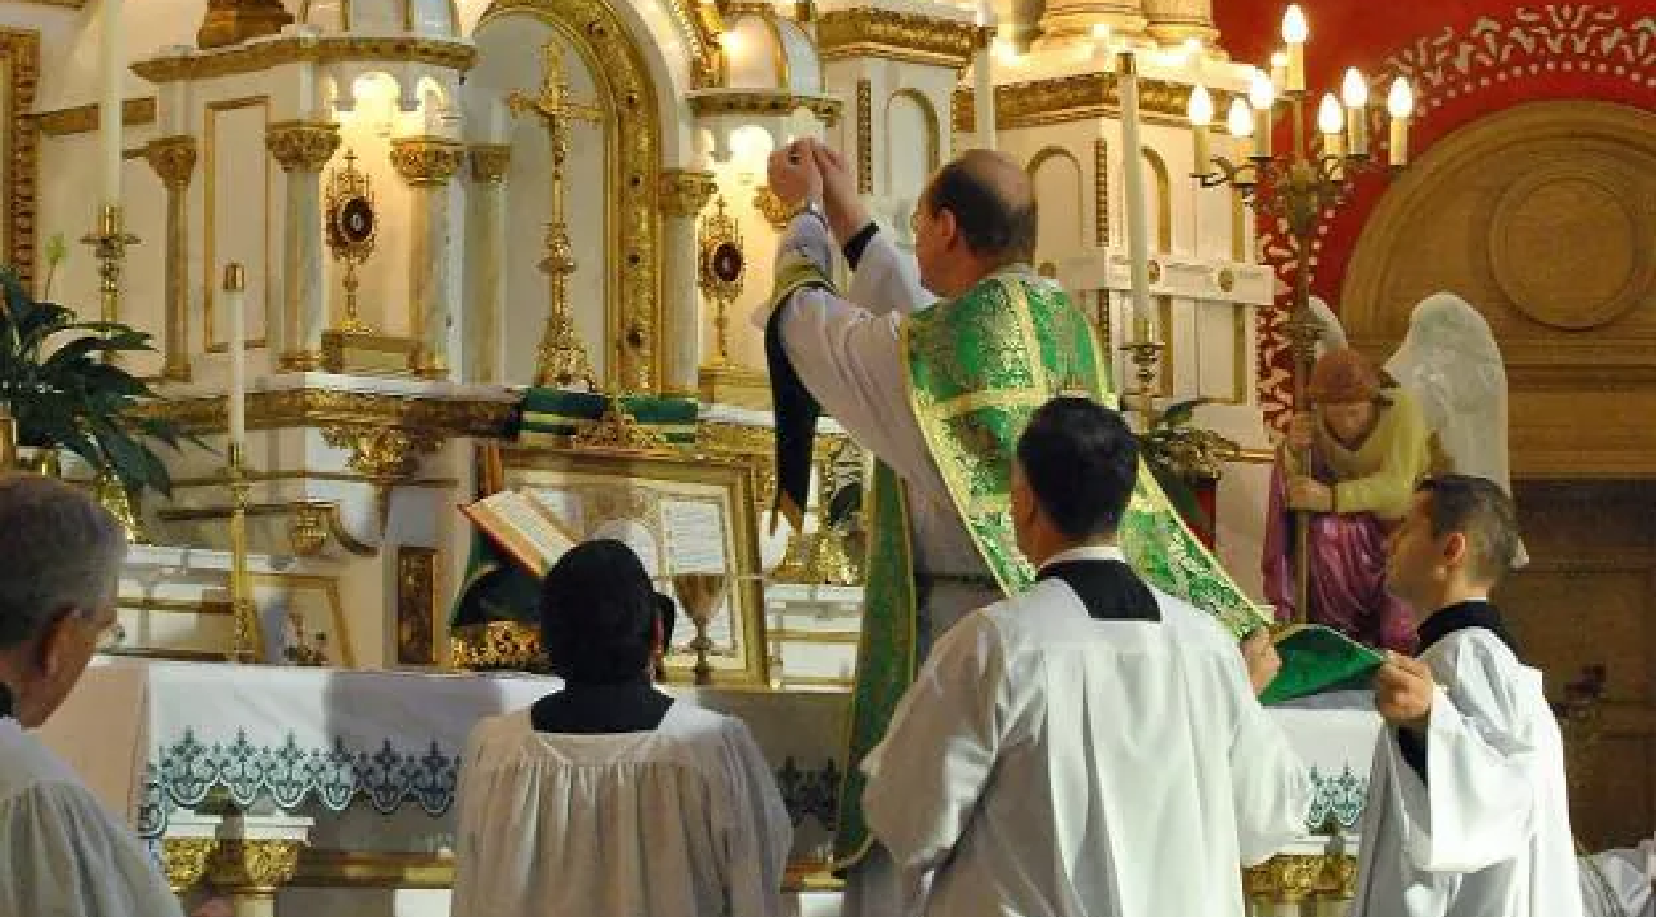 han surgido rumores de que el Papa Francisco se dispone a imponer estrictas restricciones a la Misa Tradicional en Latín